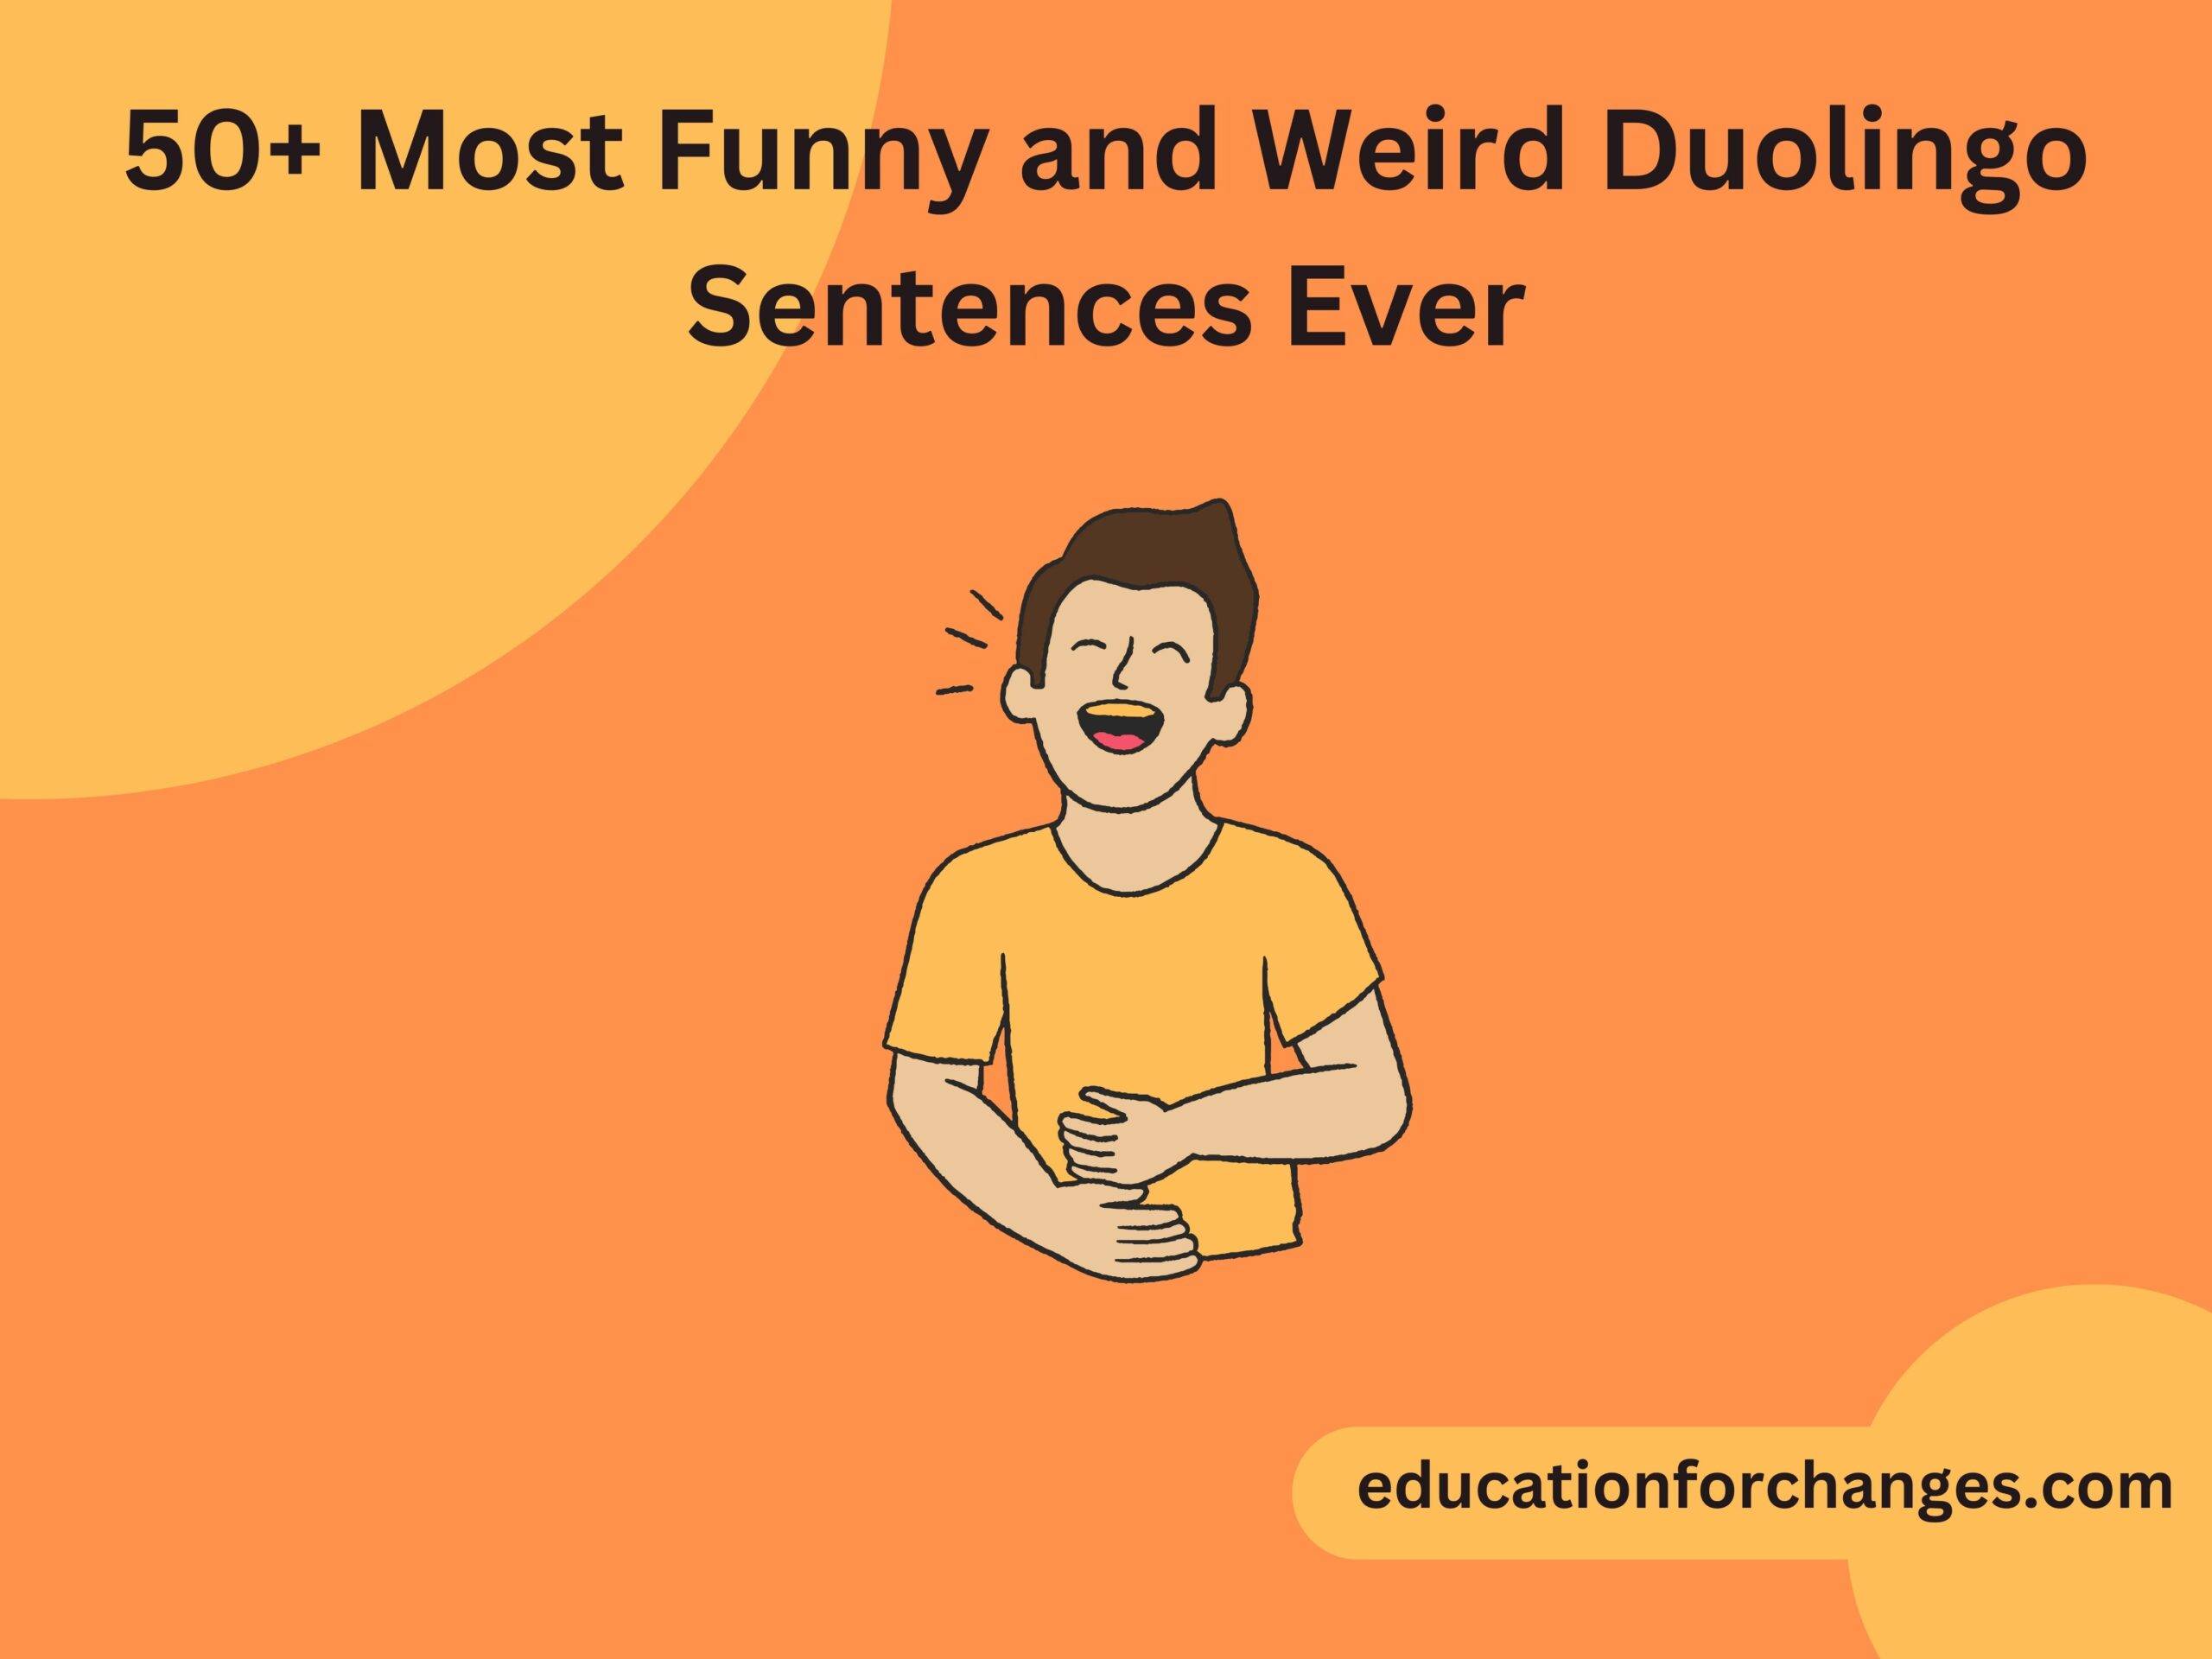 50+ Most Funny and Weird Duolingo Sentences Ever